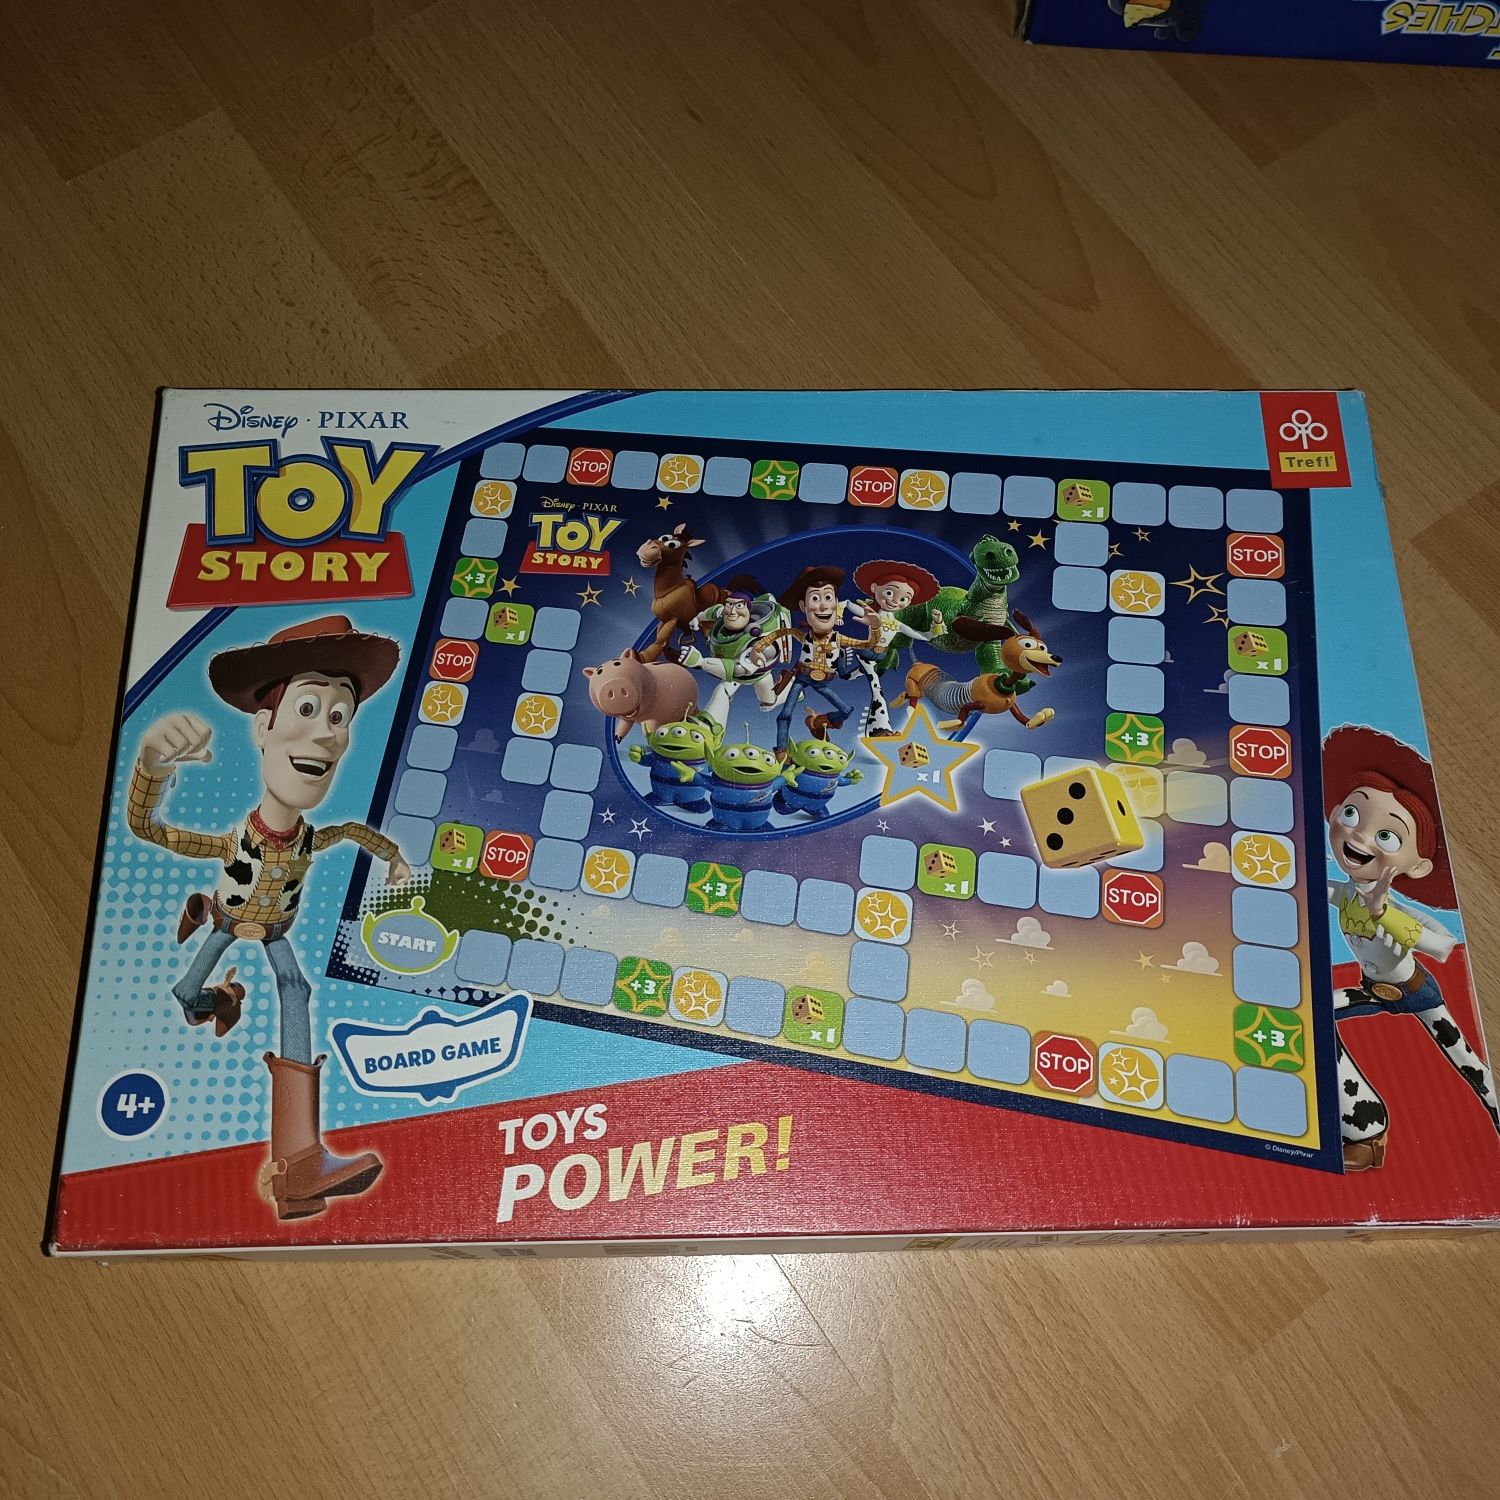 Toys Power! Gra planszowa z bajki Toy Story